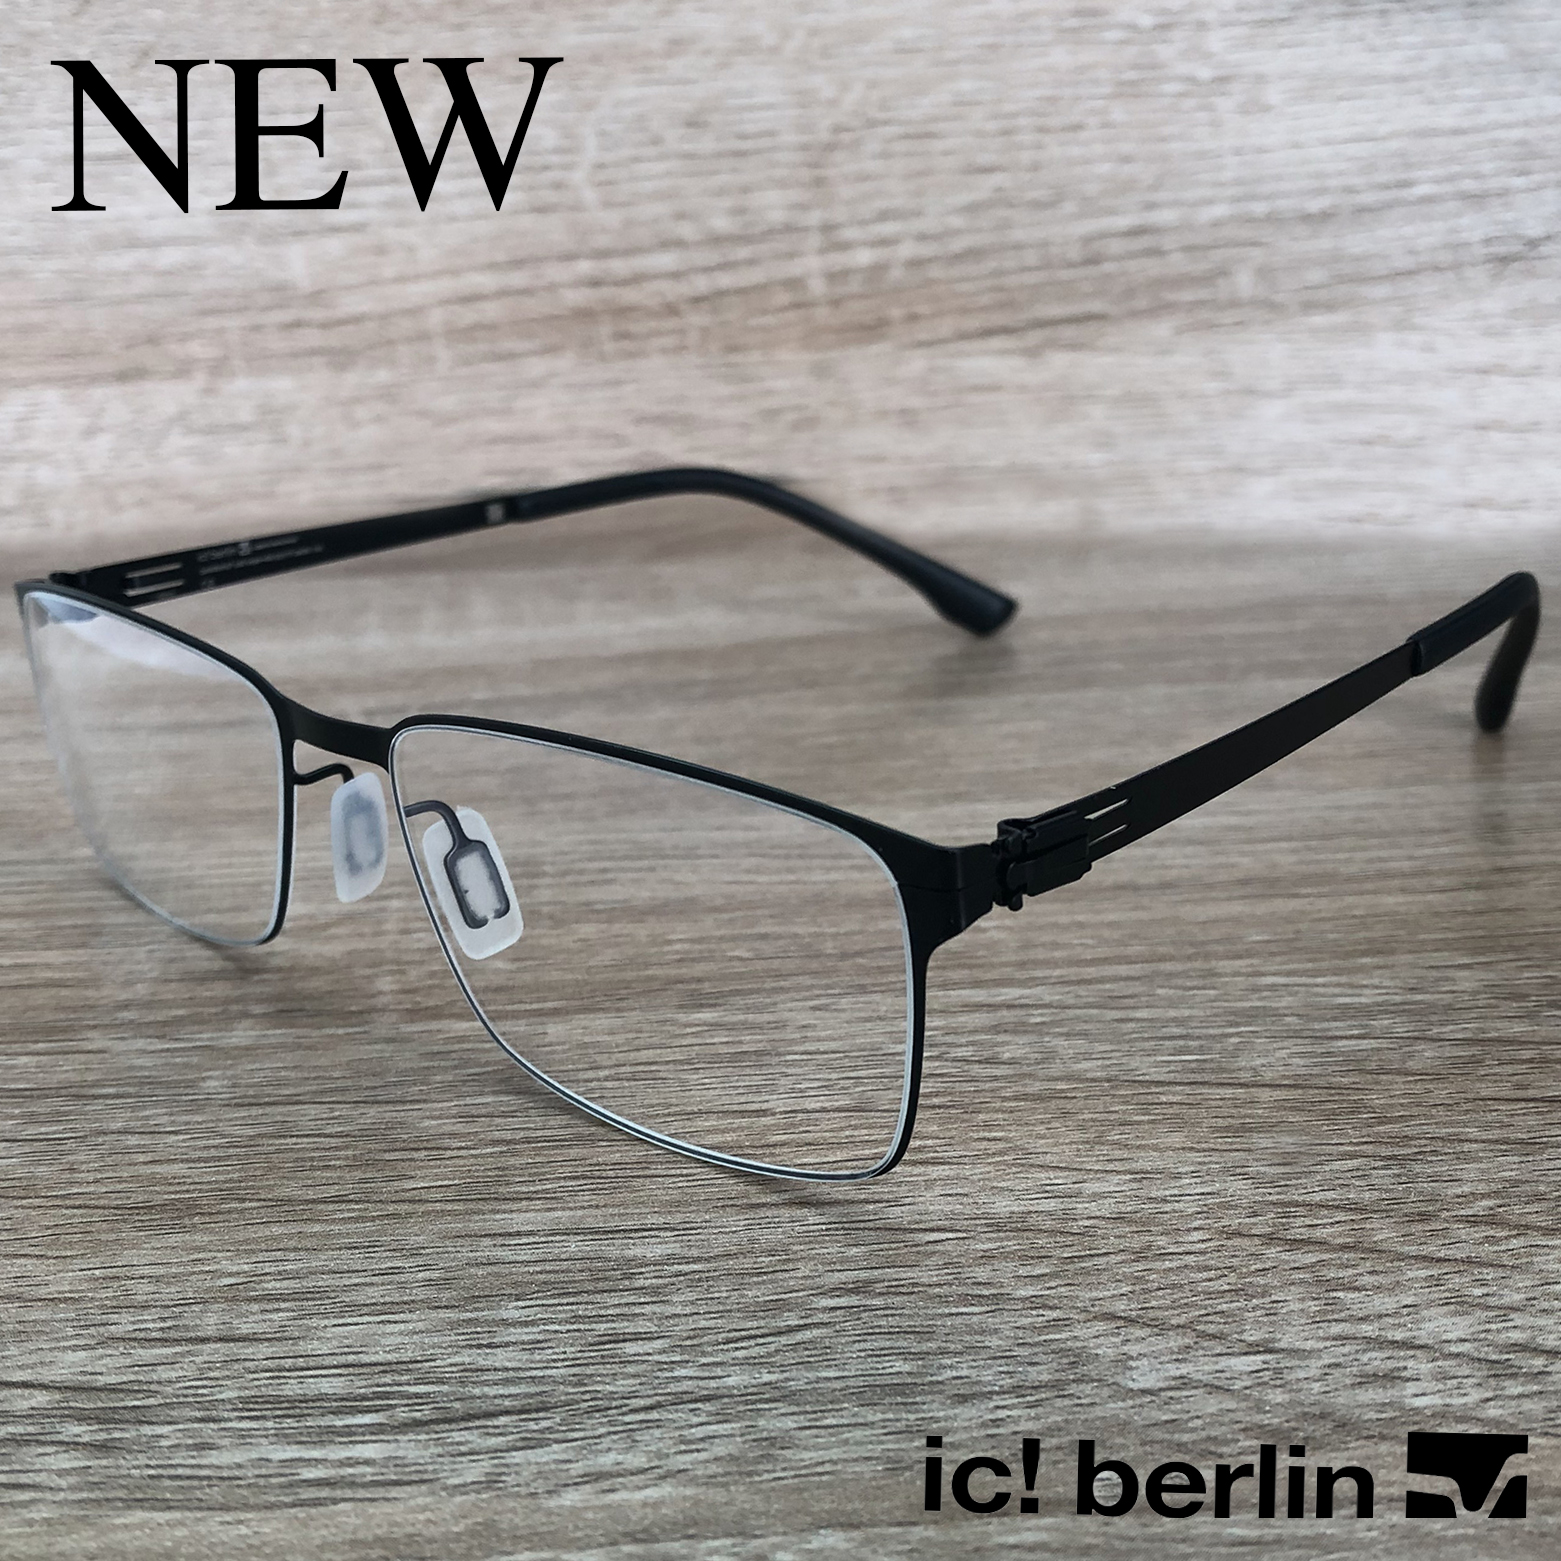 กรอบแว่นตา สำหรับตัดเลนส์ แว่นตาชาย หญิง Fashion รุ่น IC Tora N 13 สีดำ กรอบเต็ม ทรงเหลี่ยม ขาไม่ใช้น็อต ถอดได้ วัสดุ Stainless Steel น้ำหนักเบา